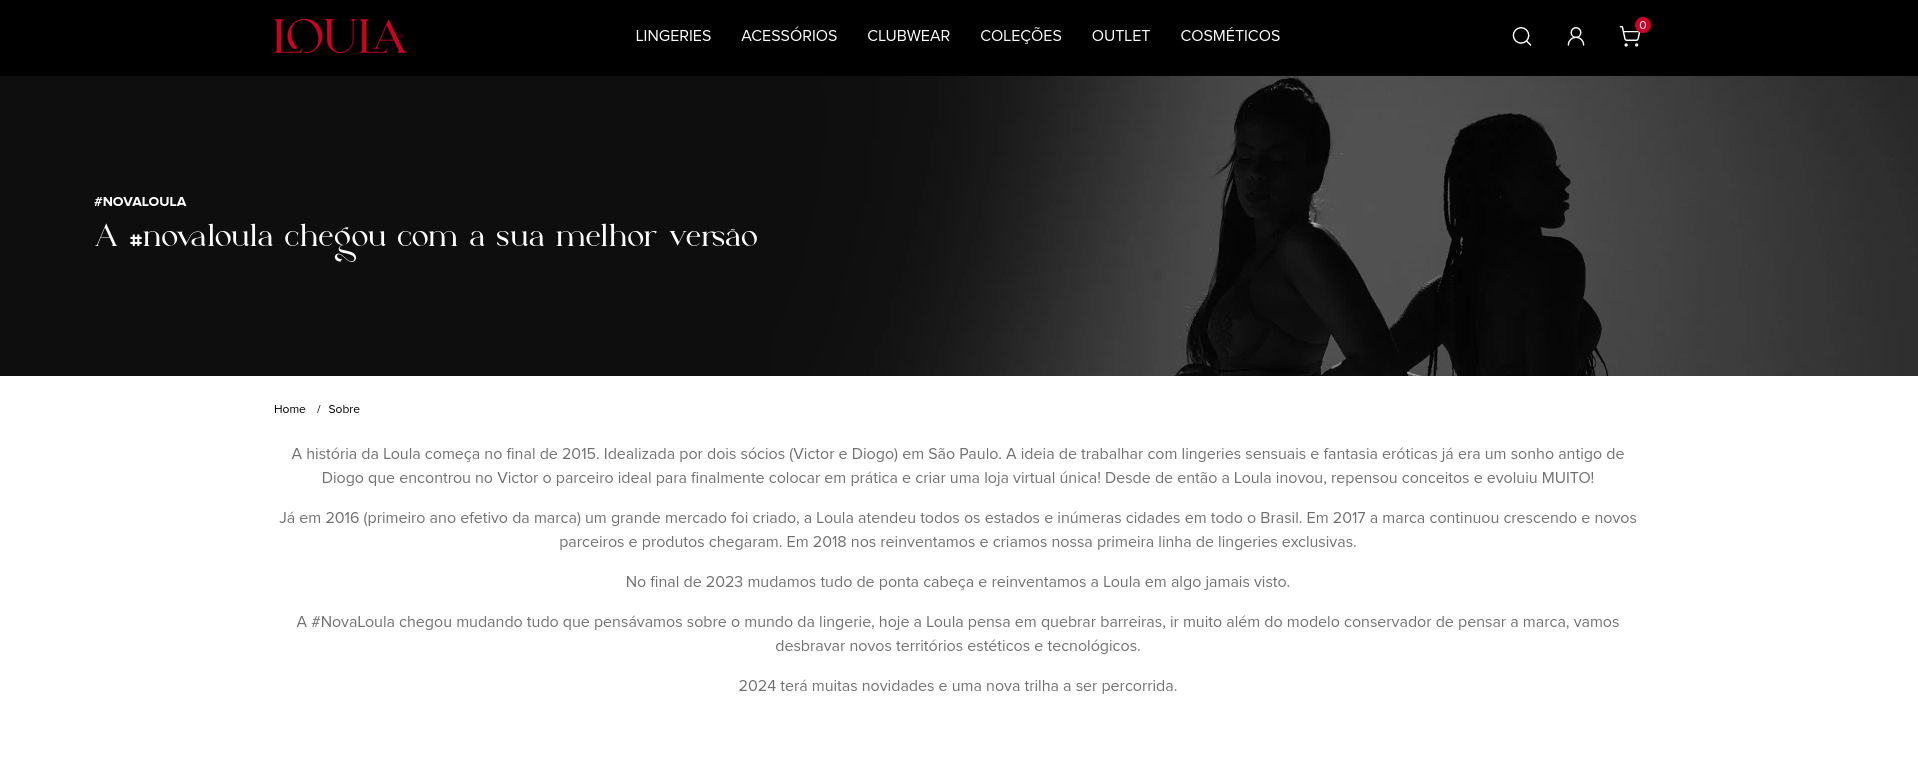 Página "sobre nós" do e-commerce Loula